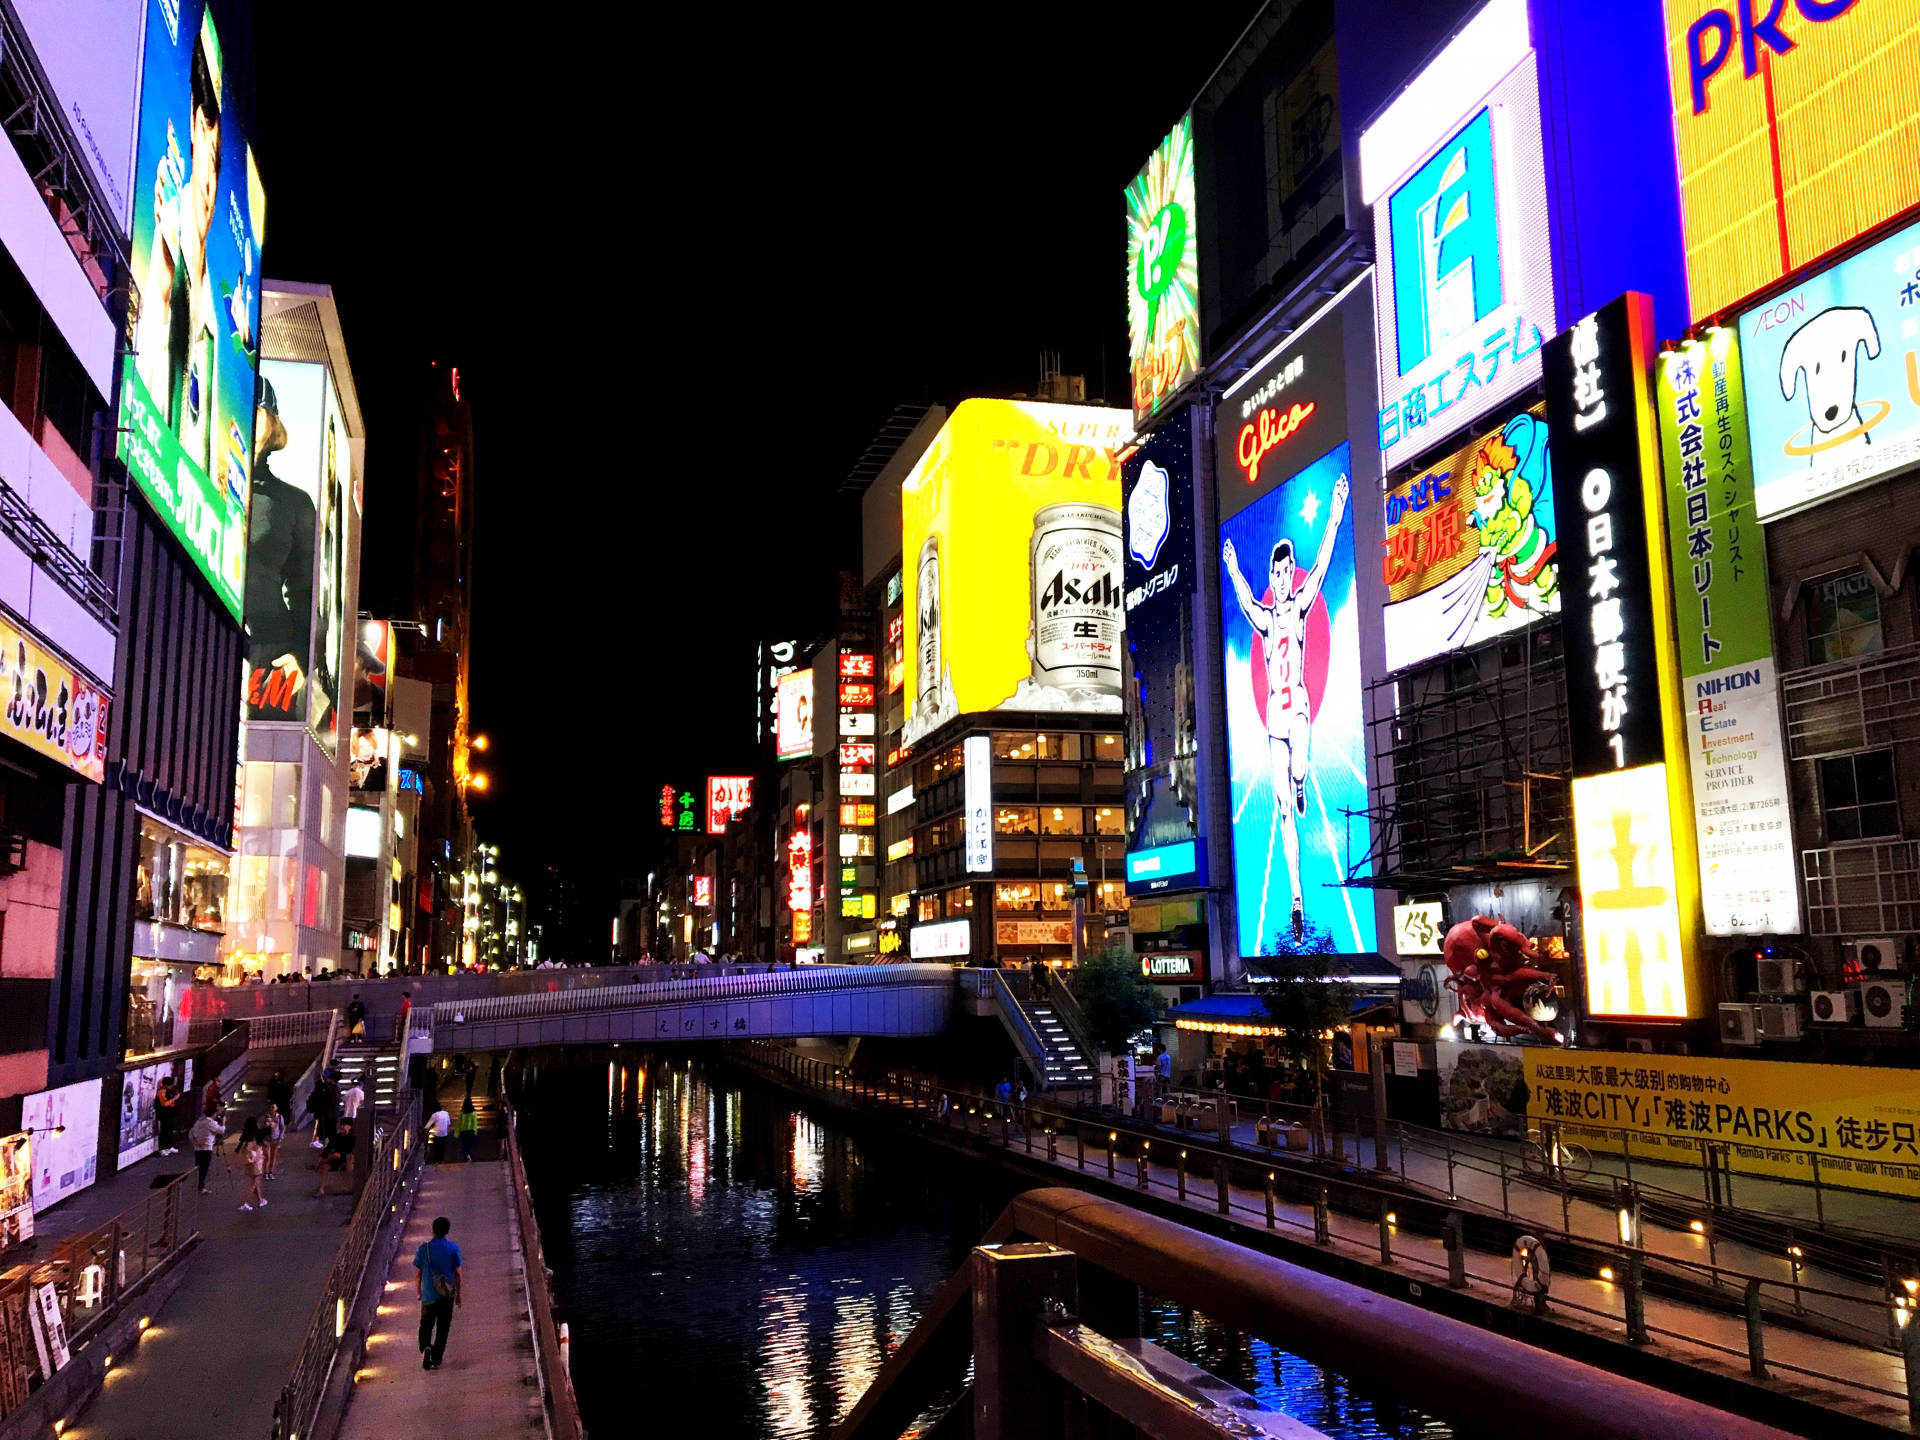 大阪のサウナおすすめ人気ランキングtop5 24時間営業や女性利用も 18年版 温泉部